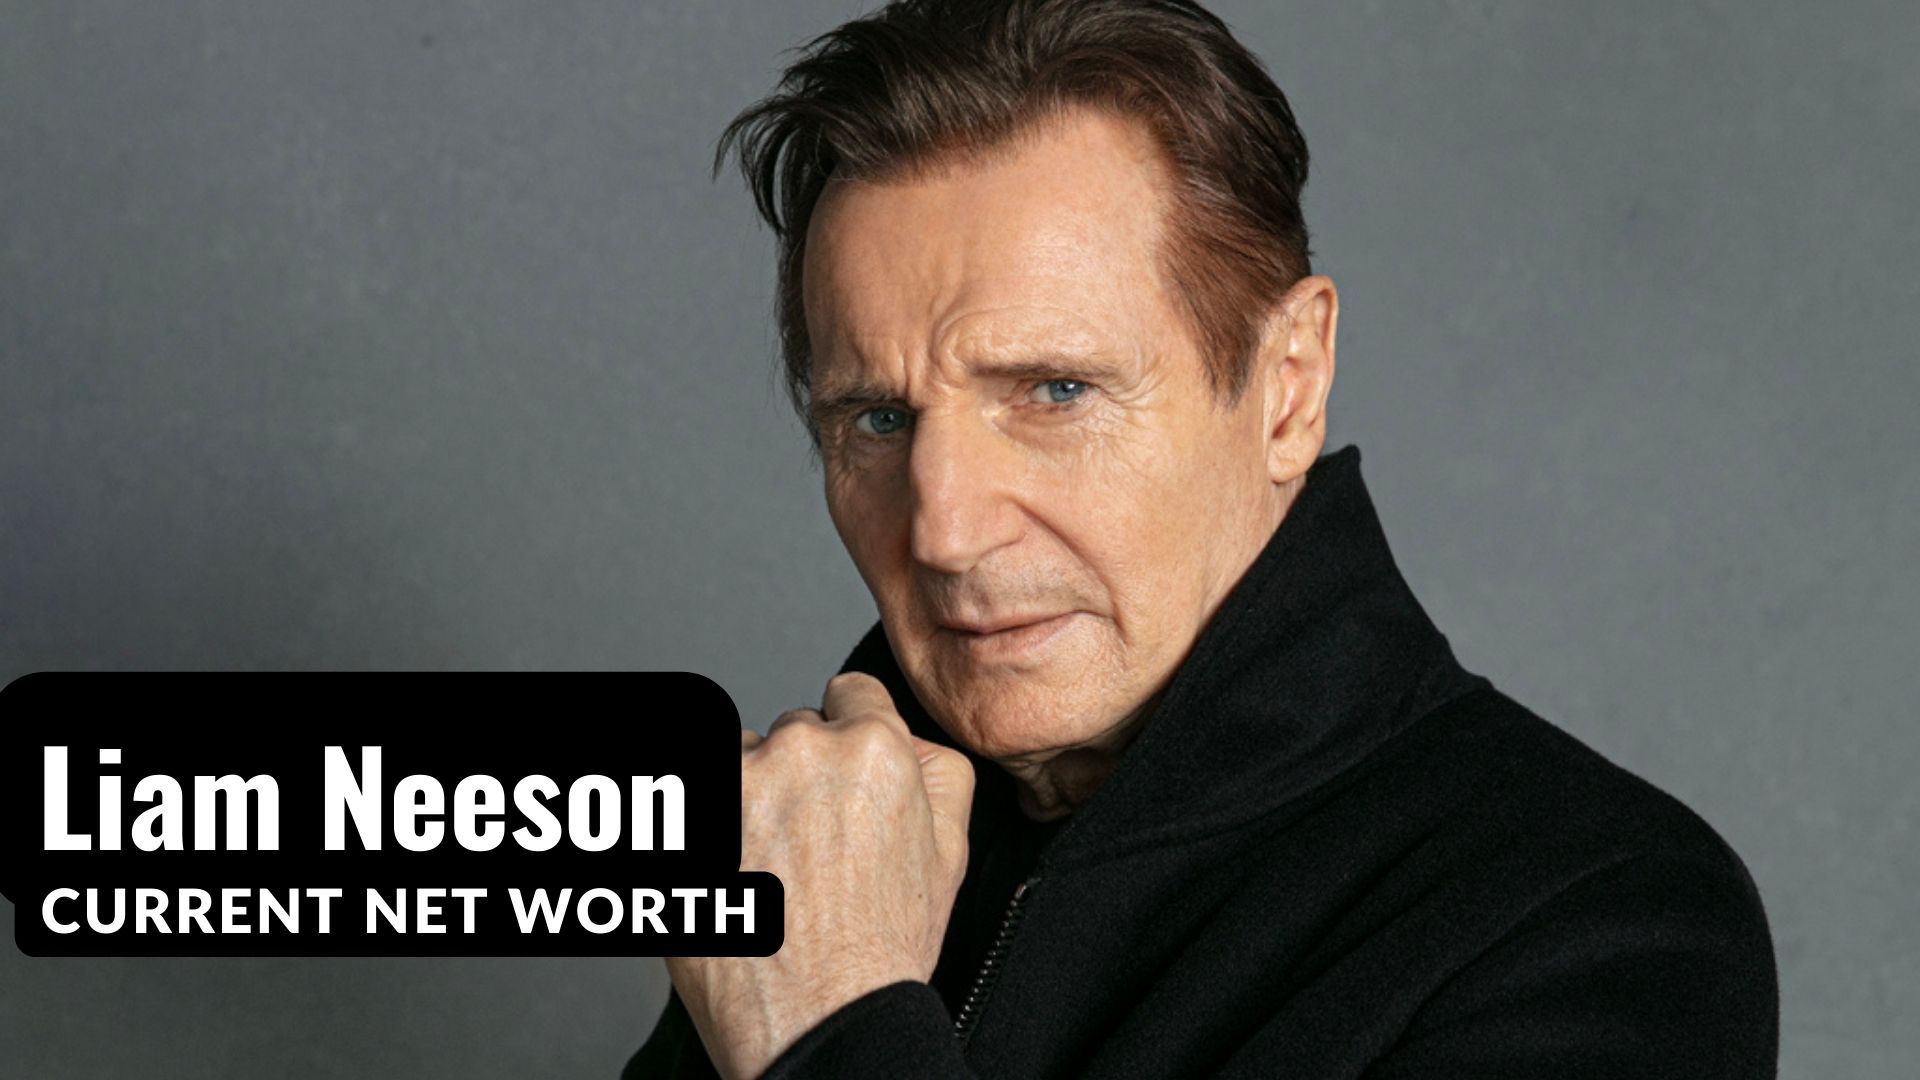 Liam Neeson Net Worth